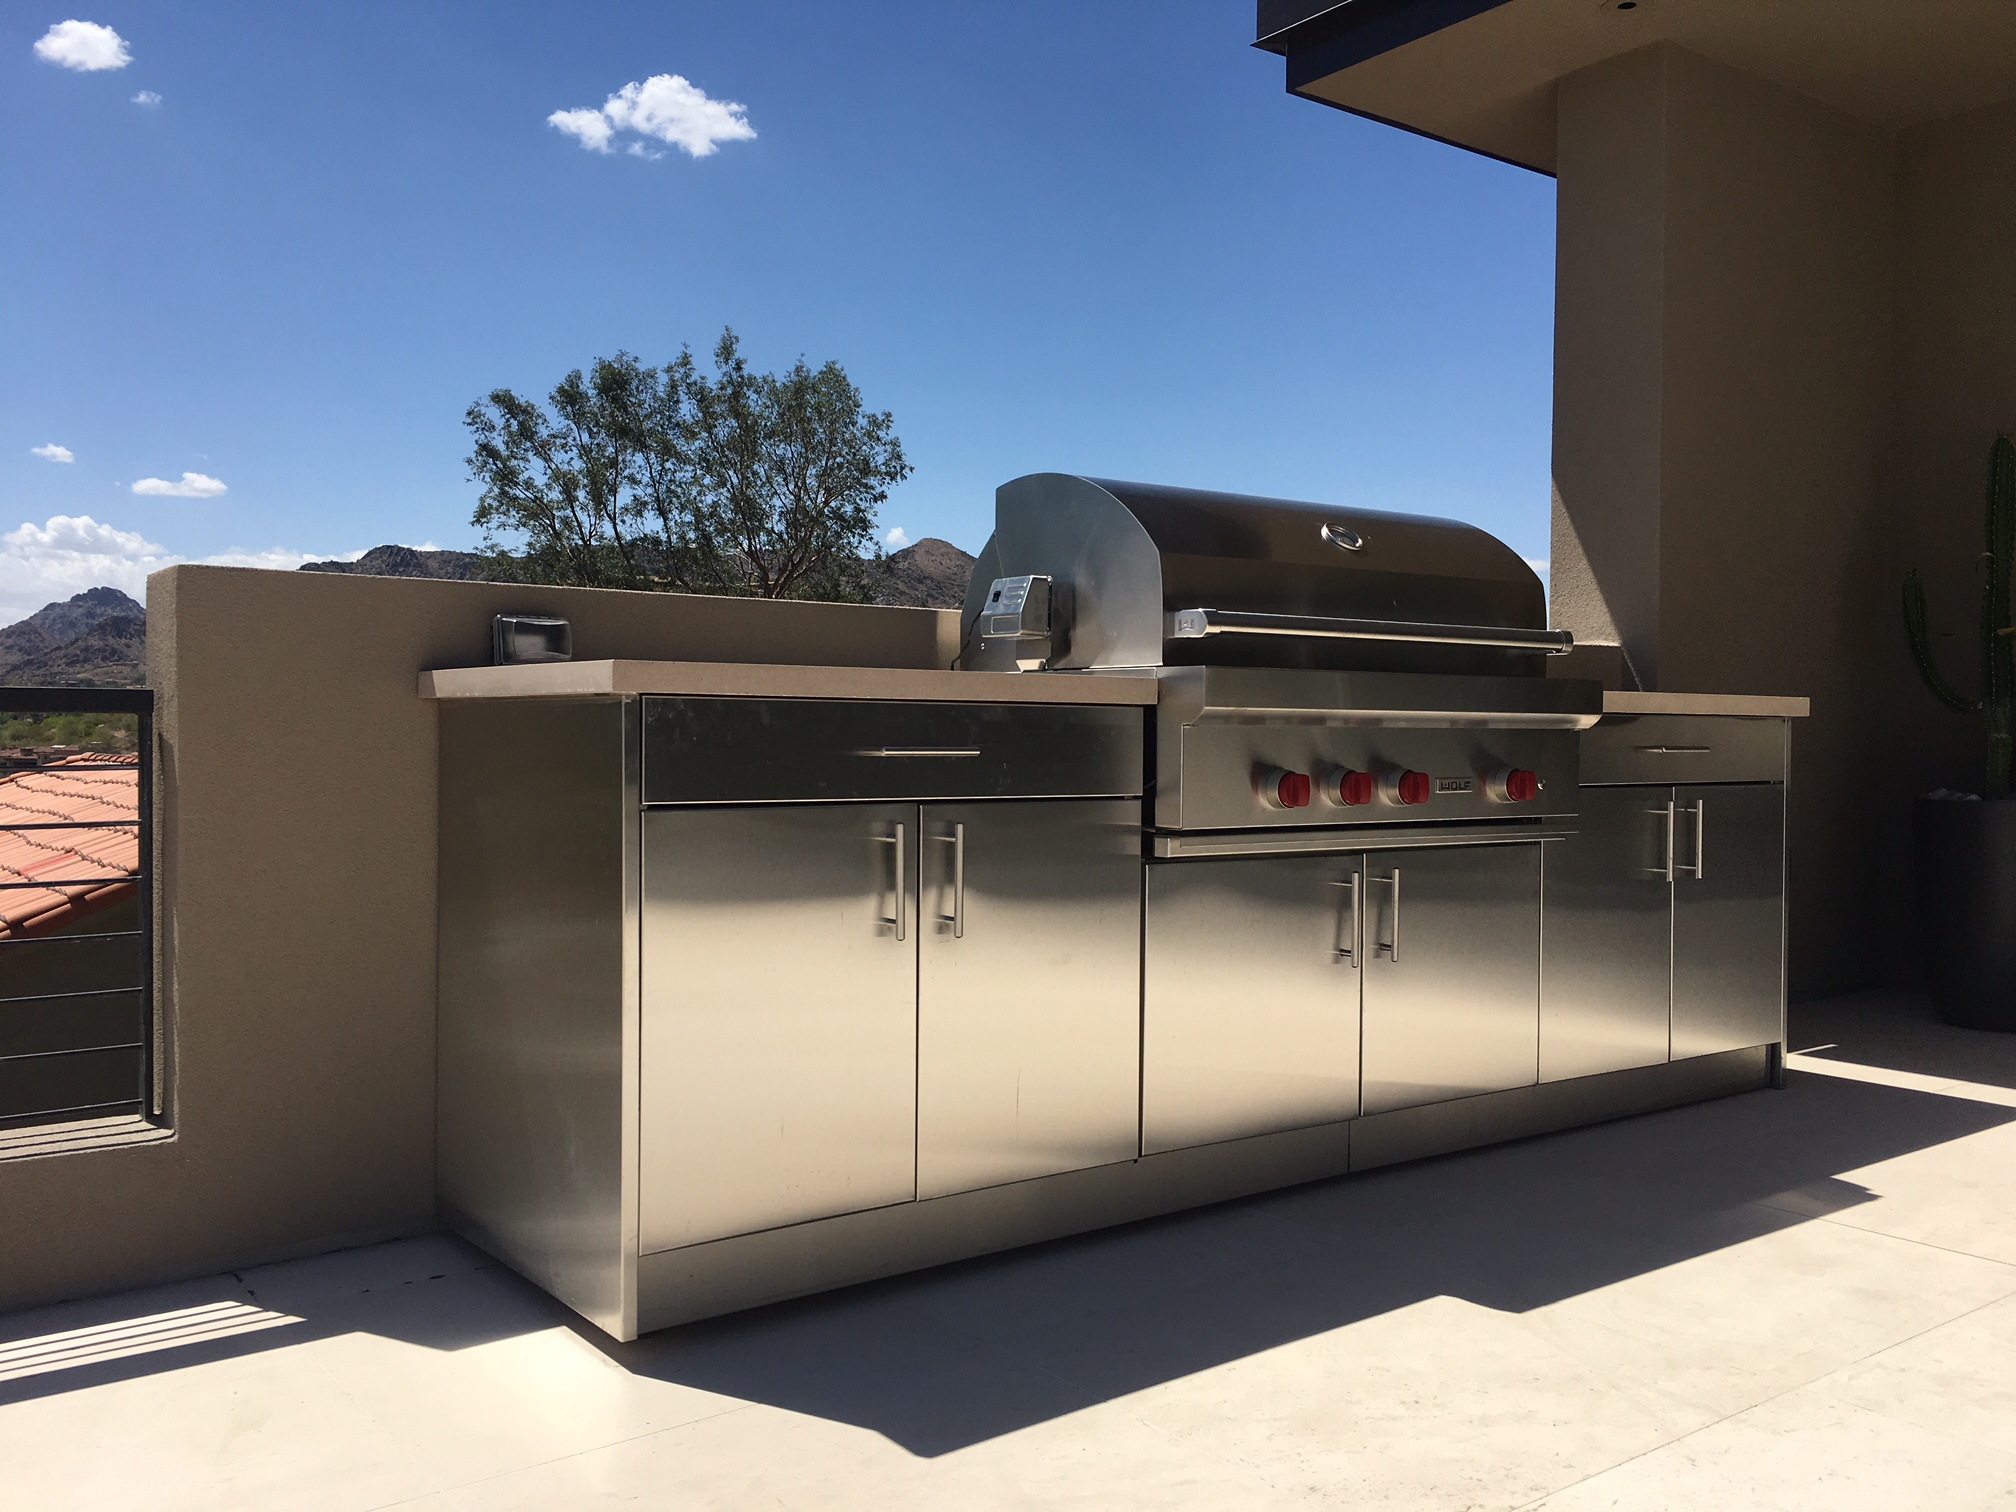 Stainless Steel Outdoor Kitchens | SteelKitchen Stainless Steel Outdoor Kitchen Cabinet